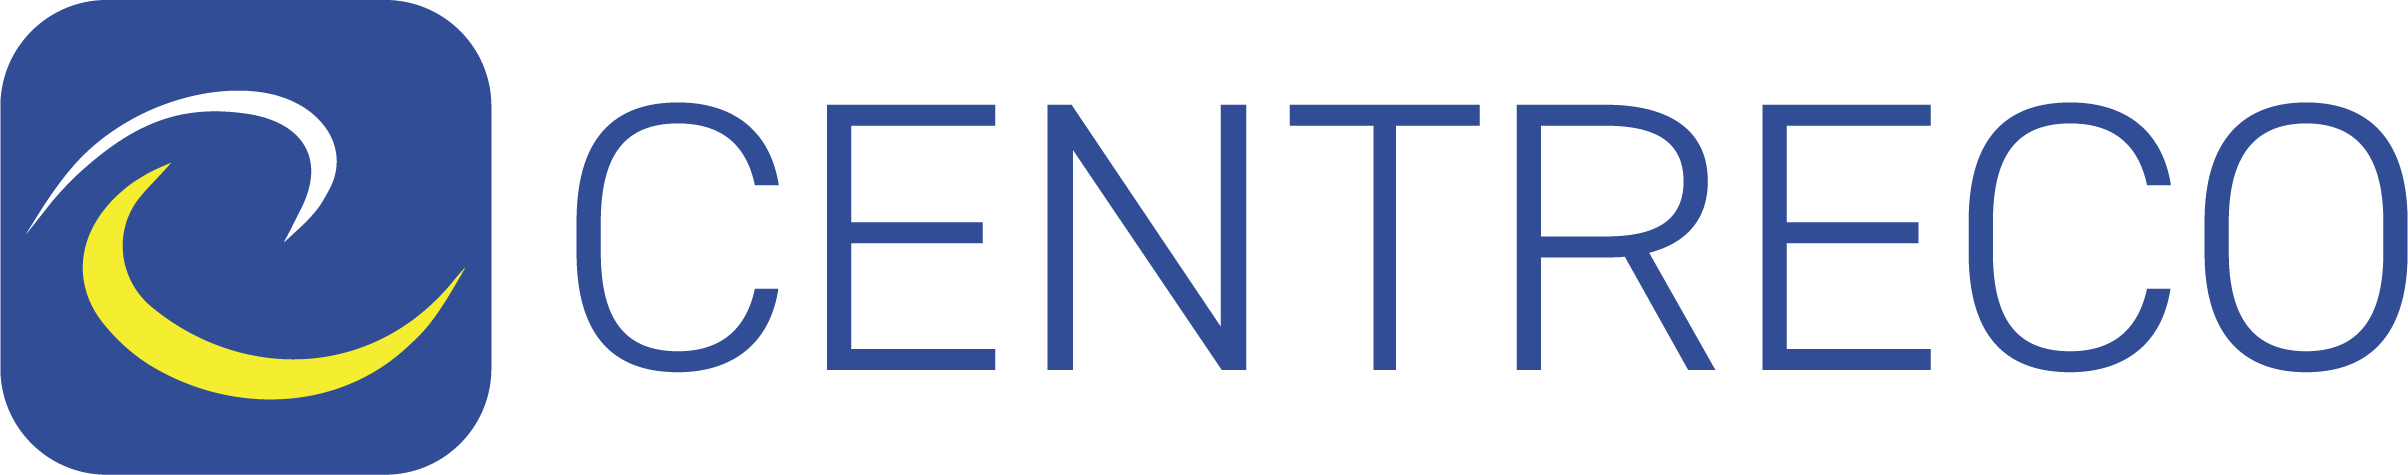 Centreco (UK) Limited Logo